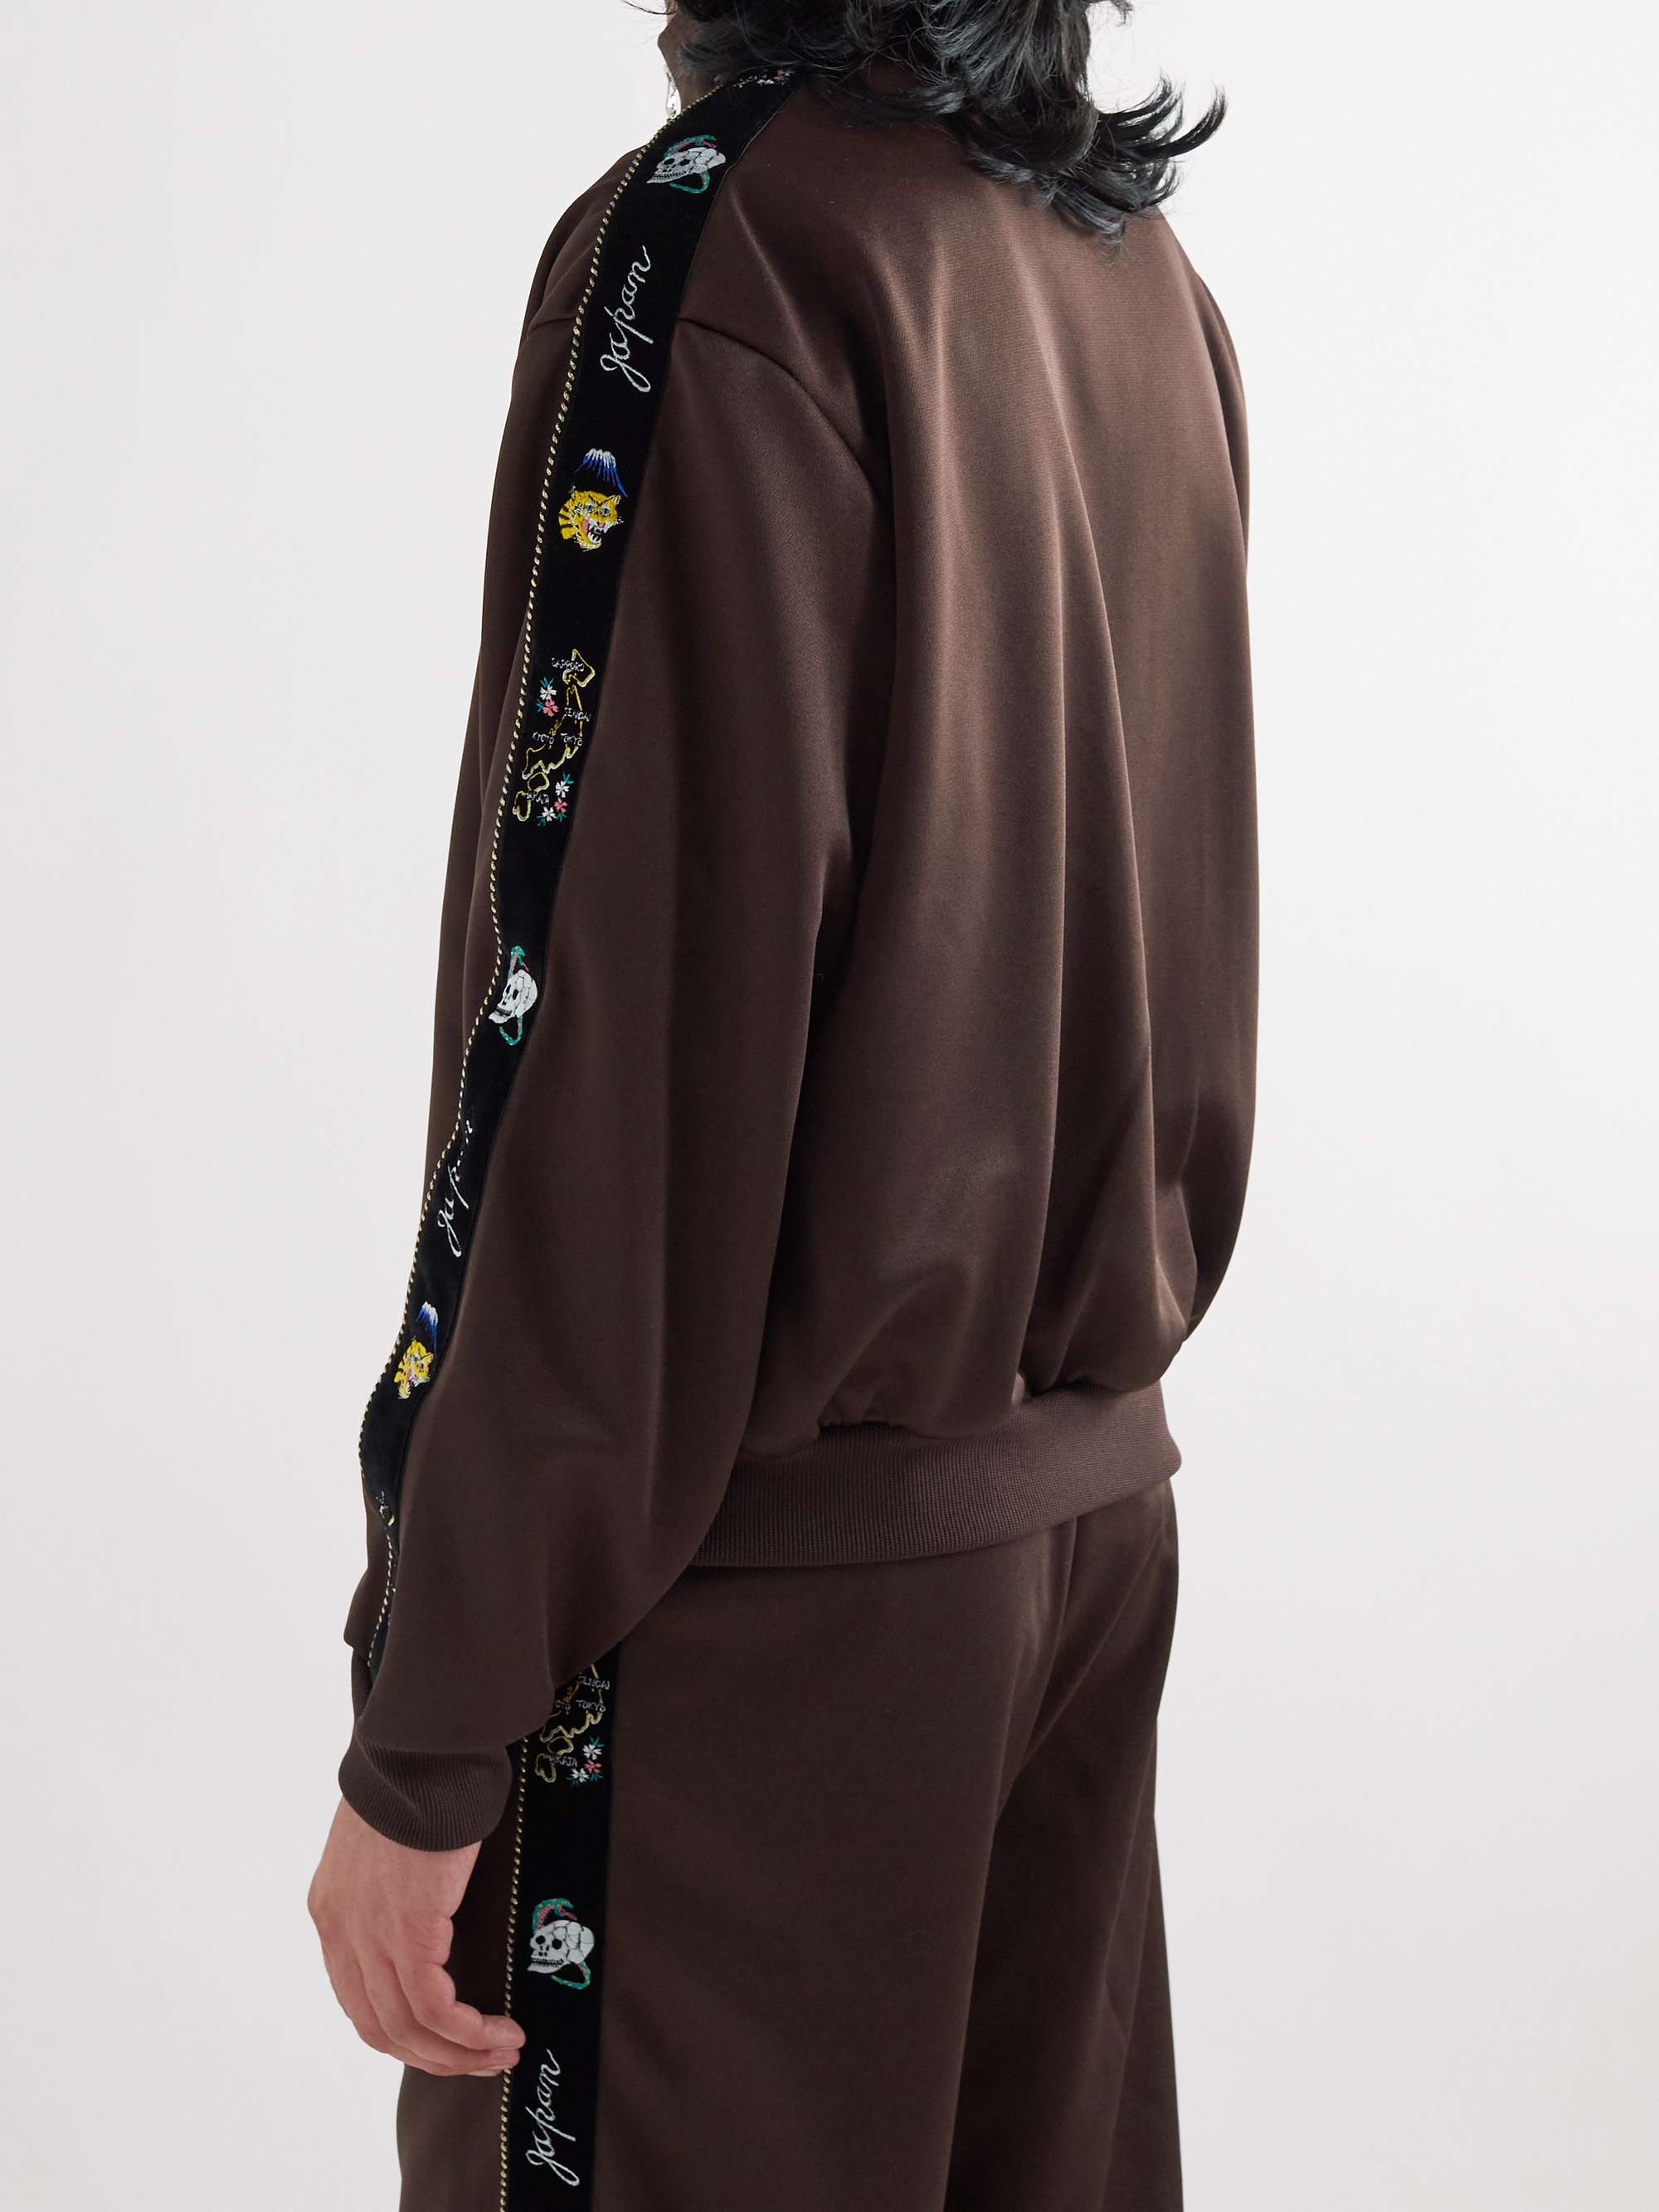 KAPITAL Embroidered Velvet-Trimmed Jersey Track Jacket